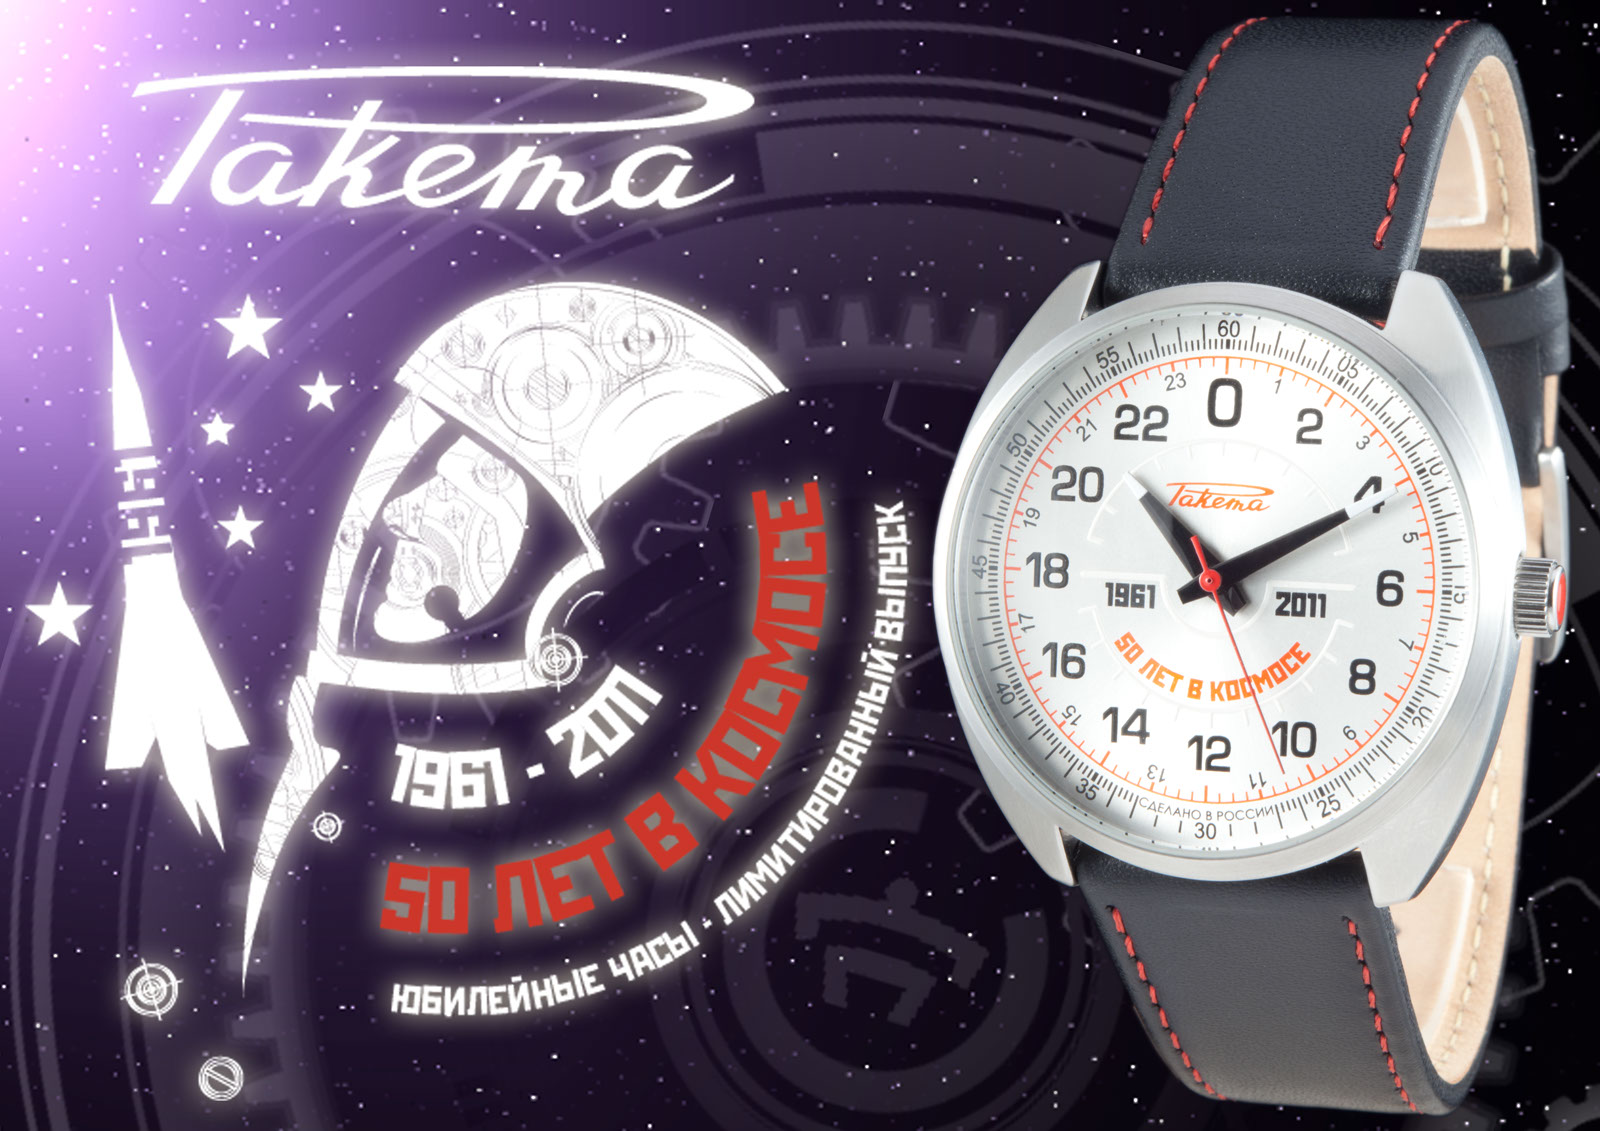 Российские часы космос. Часы ракета Петродворцовый часовой завод. Часы ракета Спутник 1 2022. Ракета “Спутник-1” 0291 часы. Часы посвященные полету в космос.